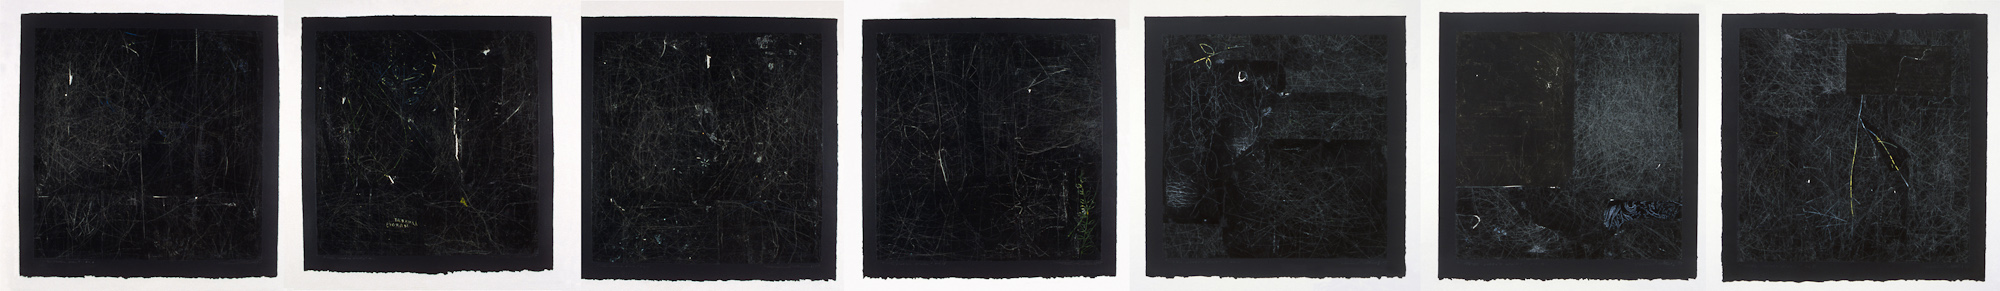 Les carrés noirs en Série, 1998 - 1999. Gouache and pencil on carbon paper, 46 x 322 cm. Collection du Musée national des beaux-arts du Québec.